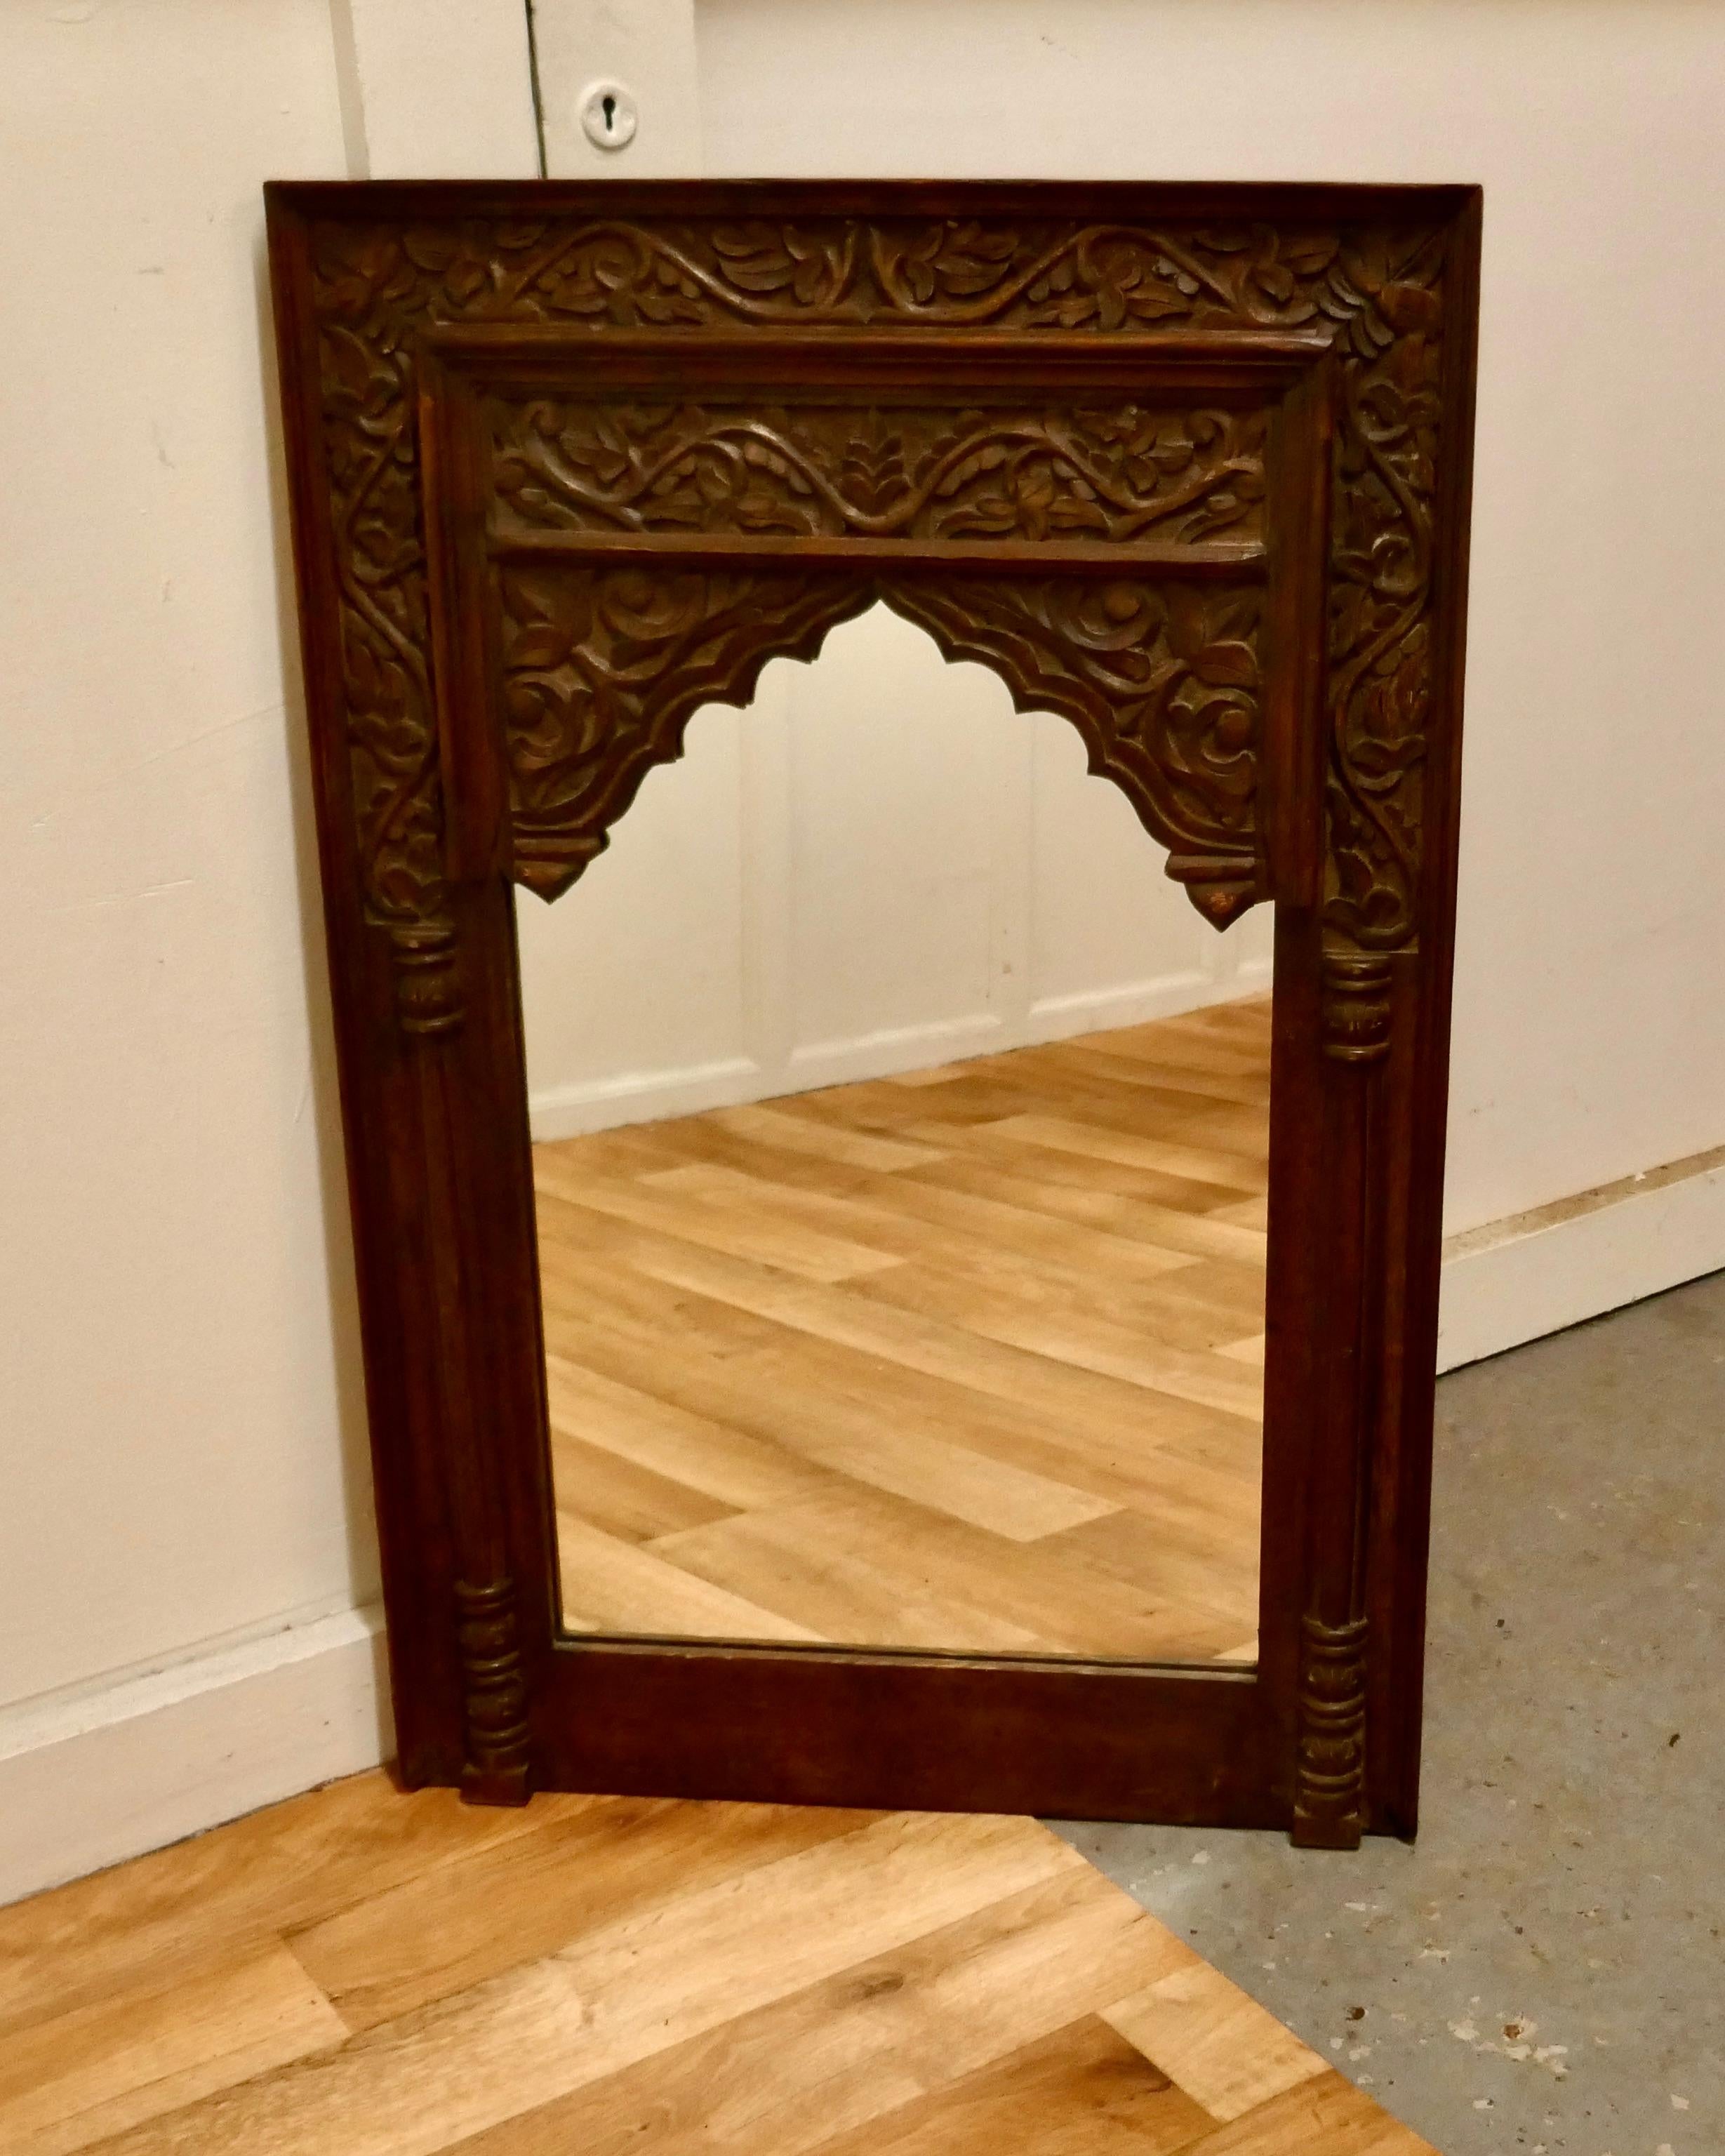 Miroir indien en teck sculpté

Une belle pièce de l'est, le large cadre est sculpté de feuilles et de fruits, le verre de vue est neuf
Une belle pièce à l'aspect islamique
Le miroir mesure 91,44 cm de haut et 61,44 cm de large
TAC139.